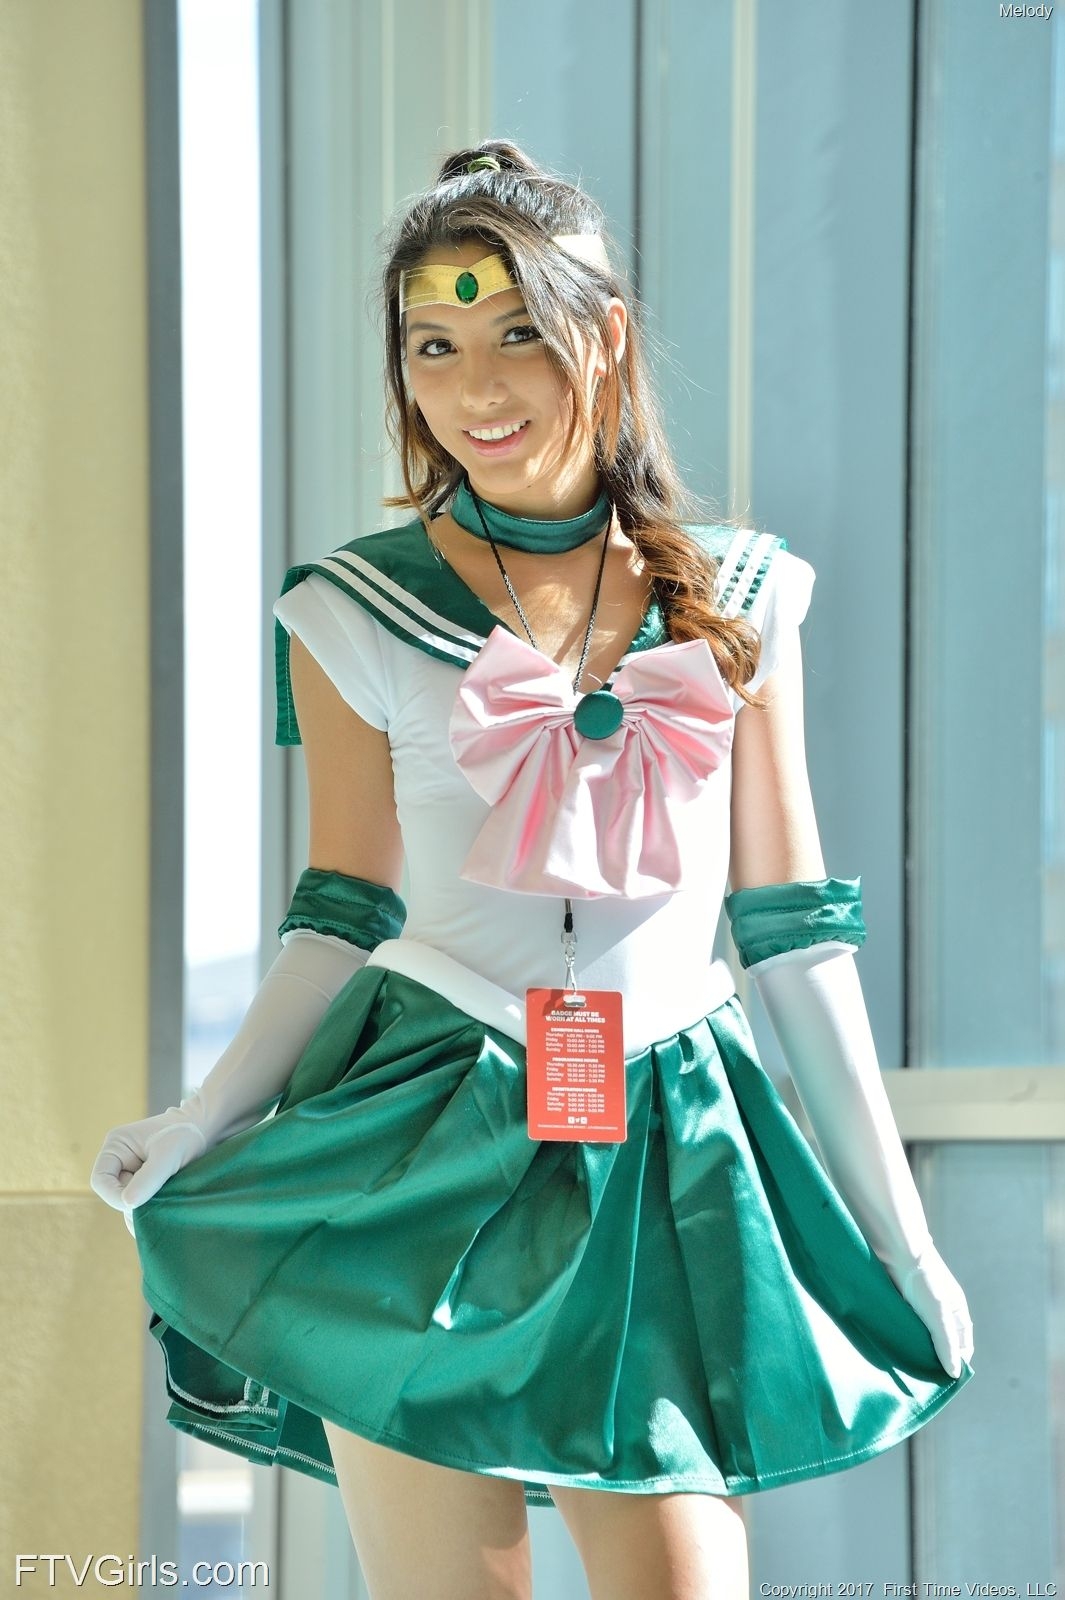 Melody Wylde as Sailor Jupiter 109